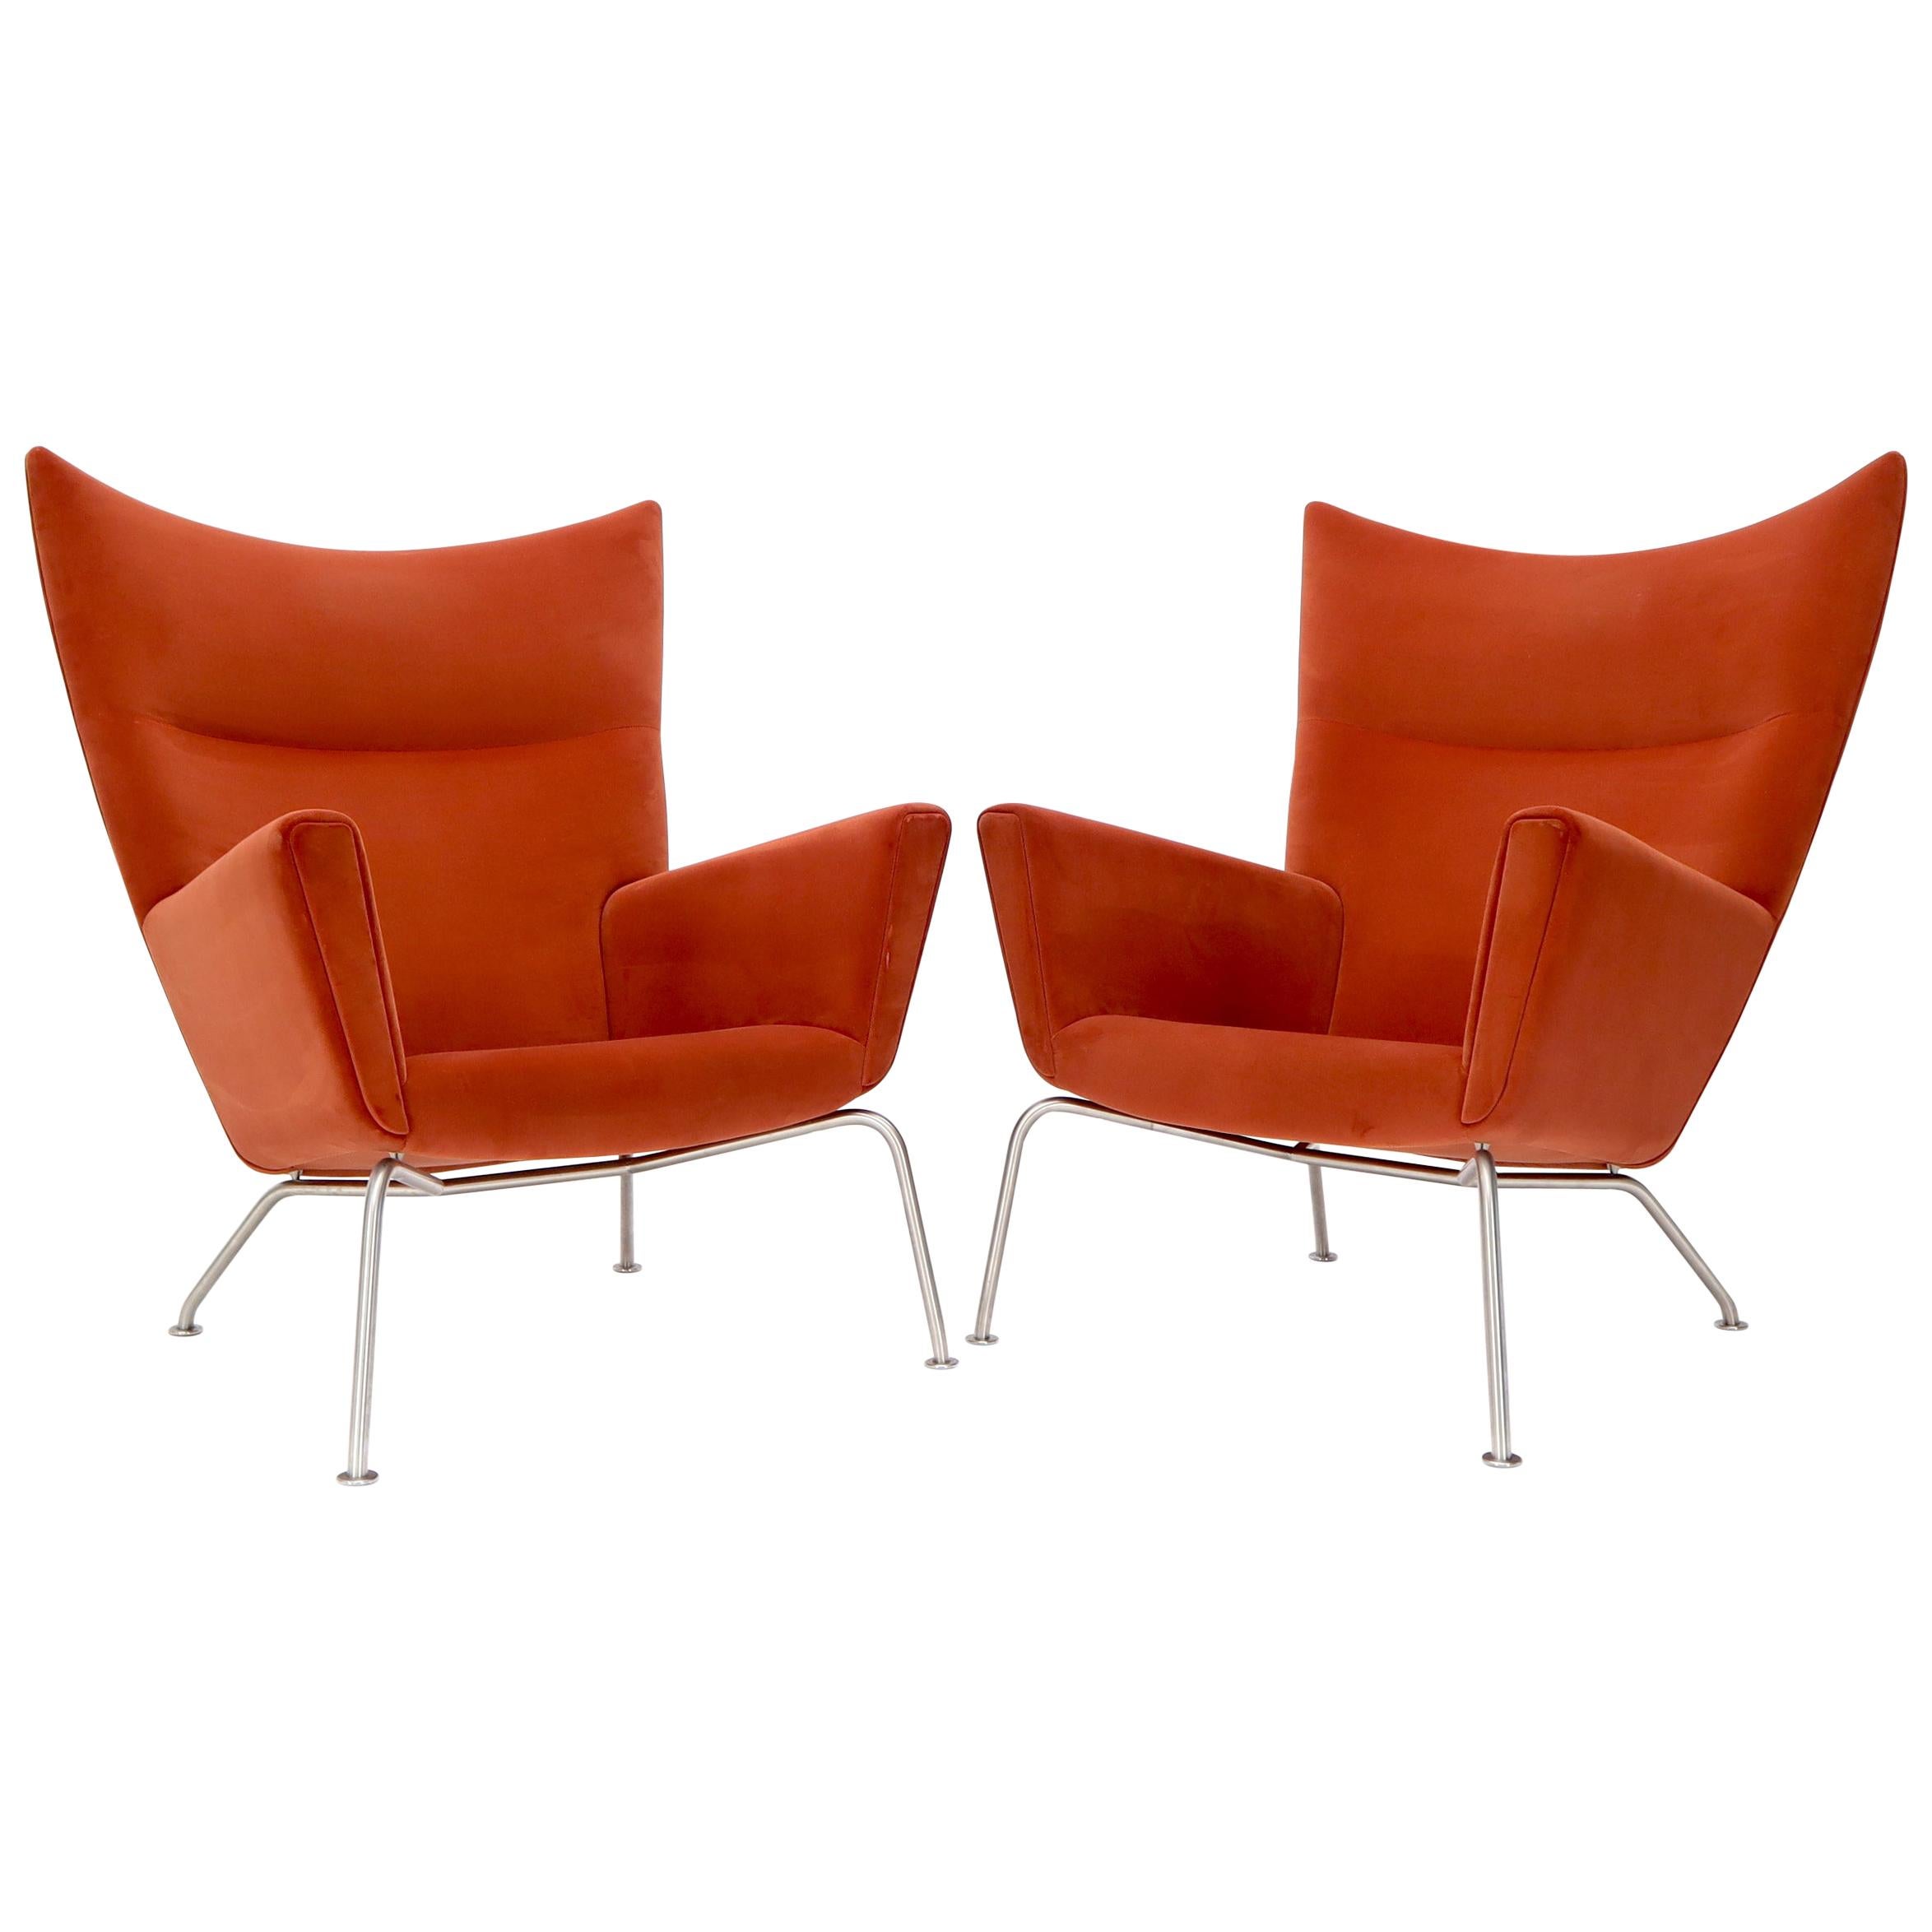 Pair of Hans Wegner for Carl Hansen Wing Chair in Orange Velvet like Fabric OX